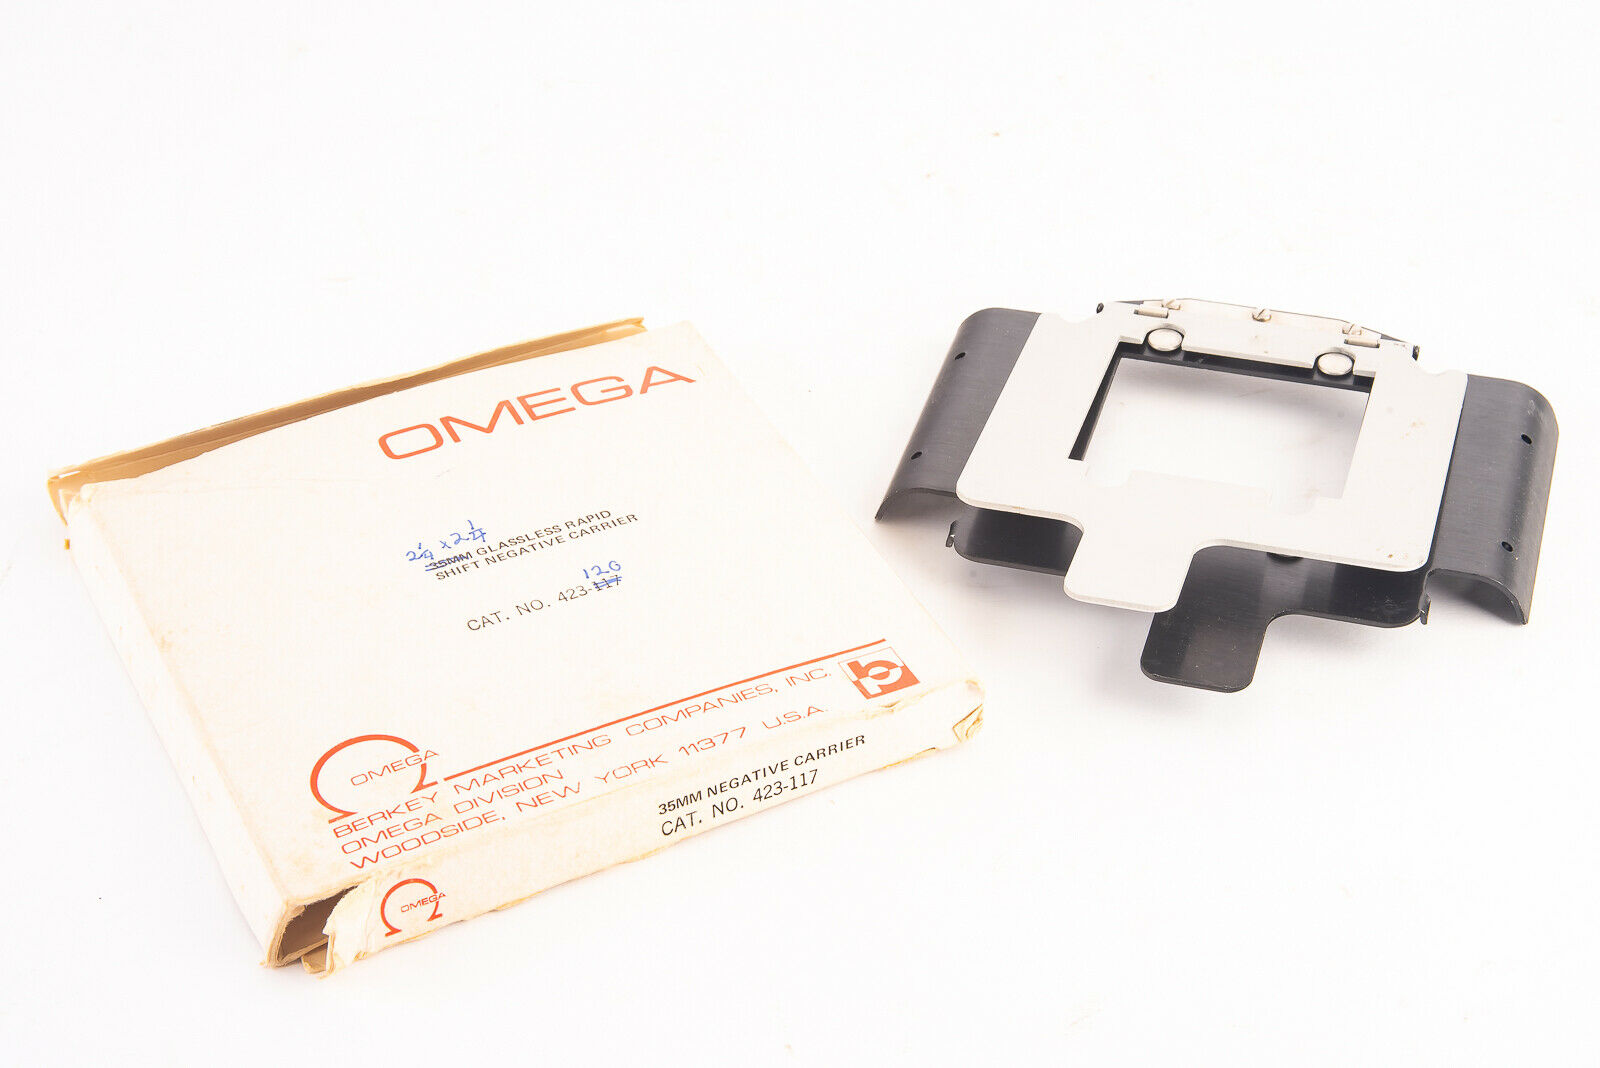 Omega 423-120 2 1/4 X 2 1/4" 6x6cm Glassless Rapid Shift Negative Carrier V17